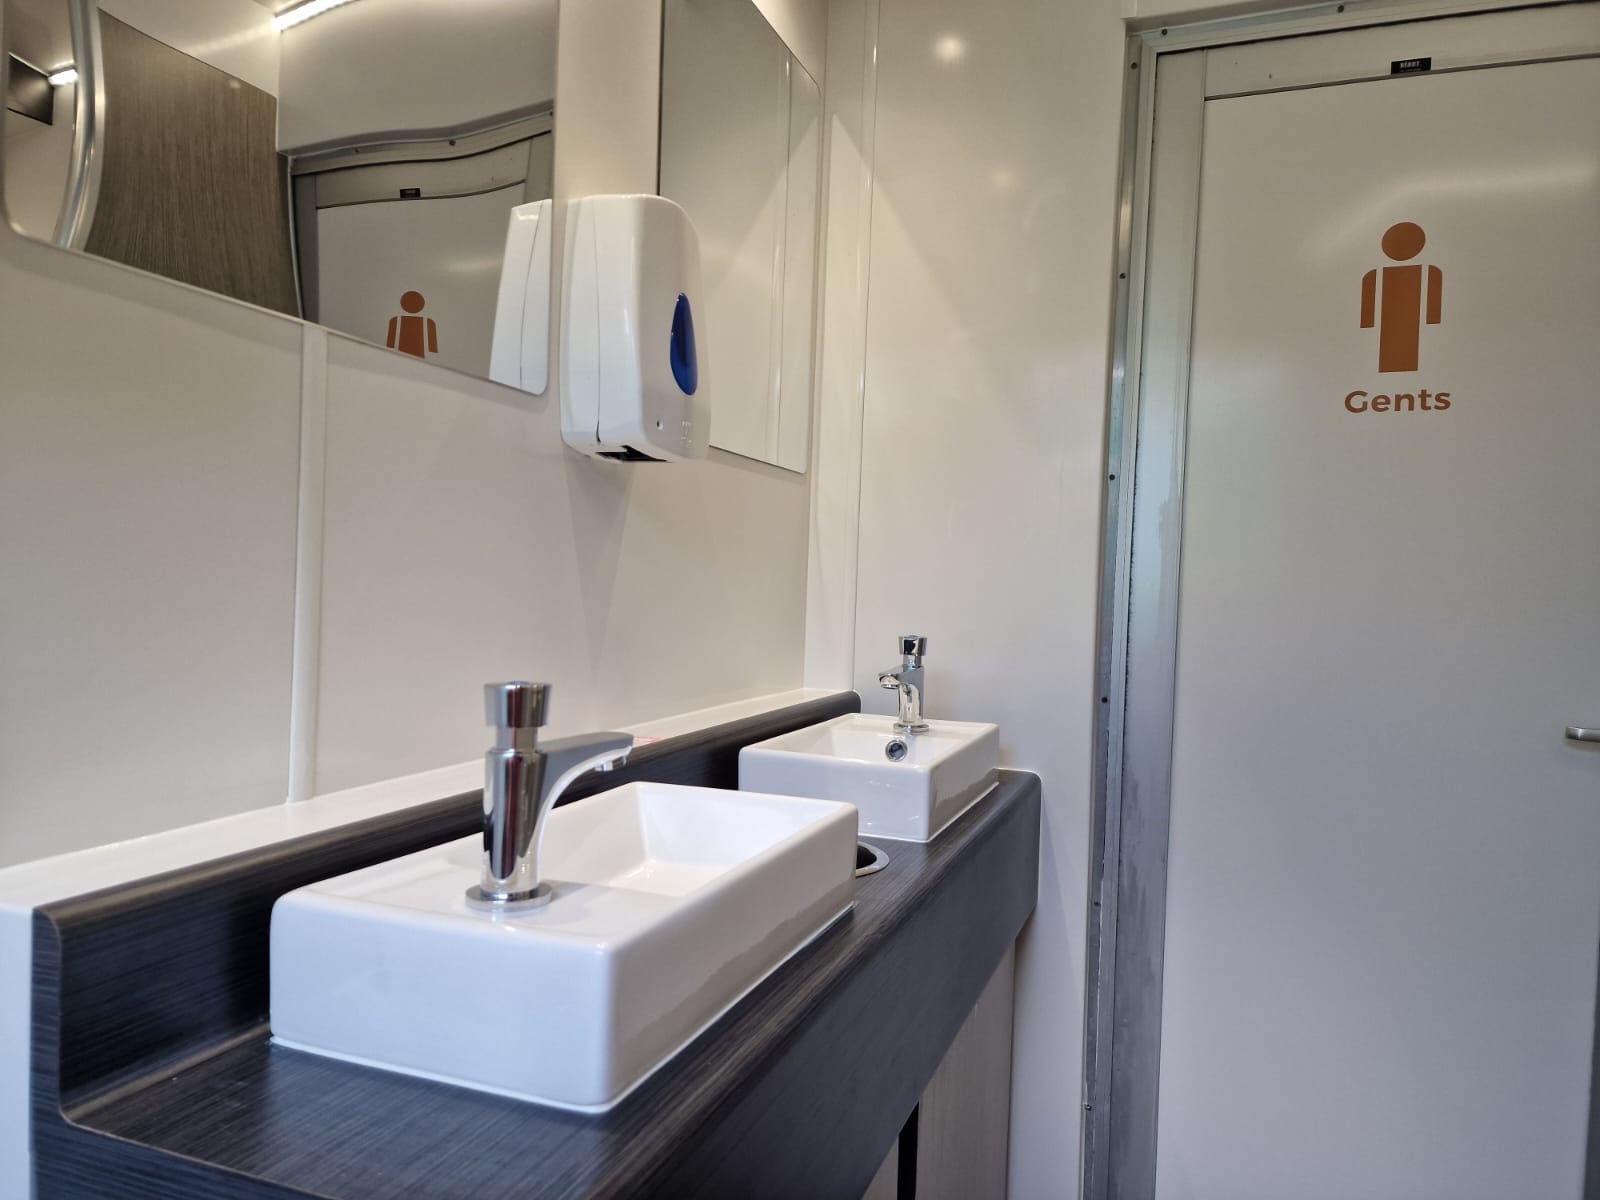 Sink inside gents luxury toilet trailer